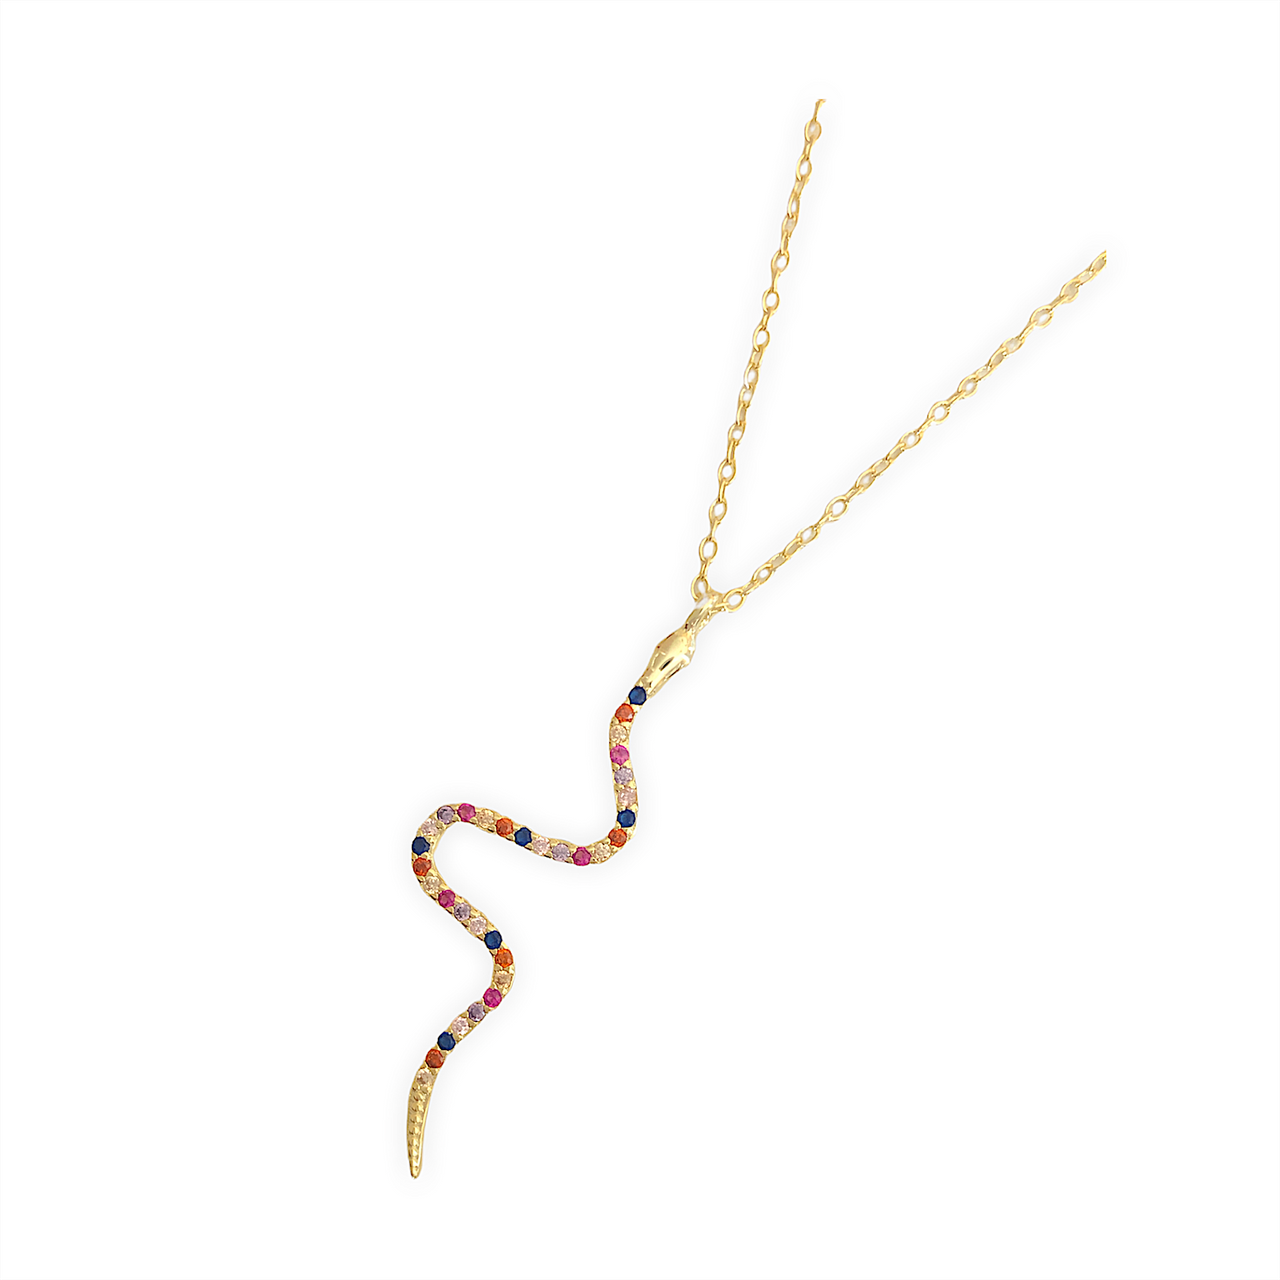 DETALLE:Collar corto con serpiente y cadena de plata de ley con baño de oro de 18k y circonitas de colores. Este collar es ideal con unos vaqueritos y un look informal.